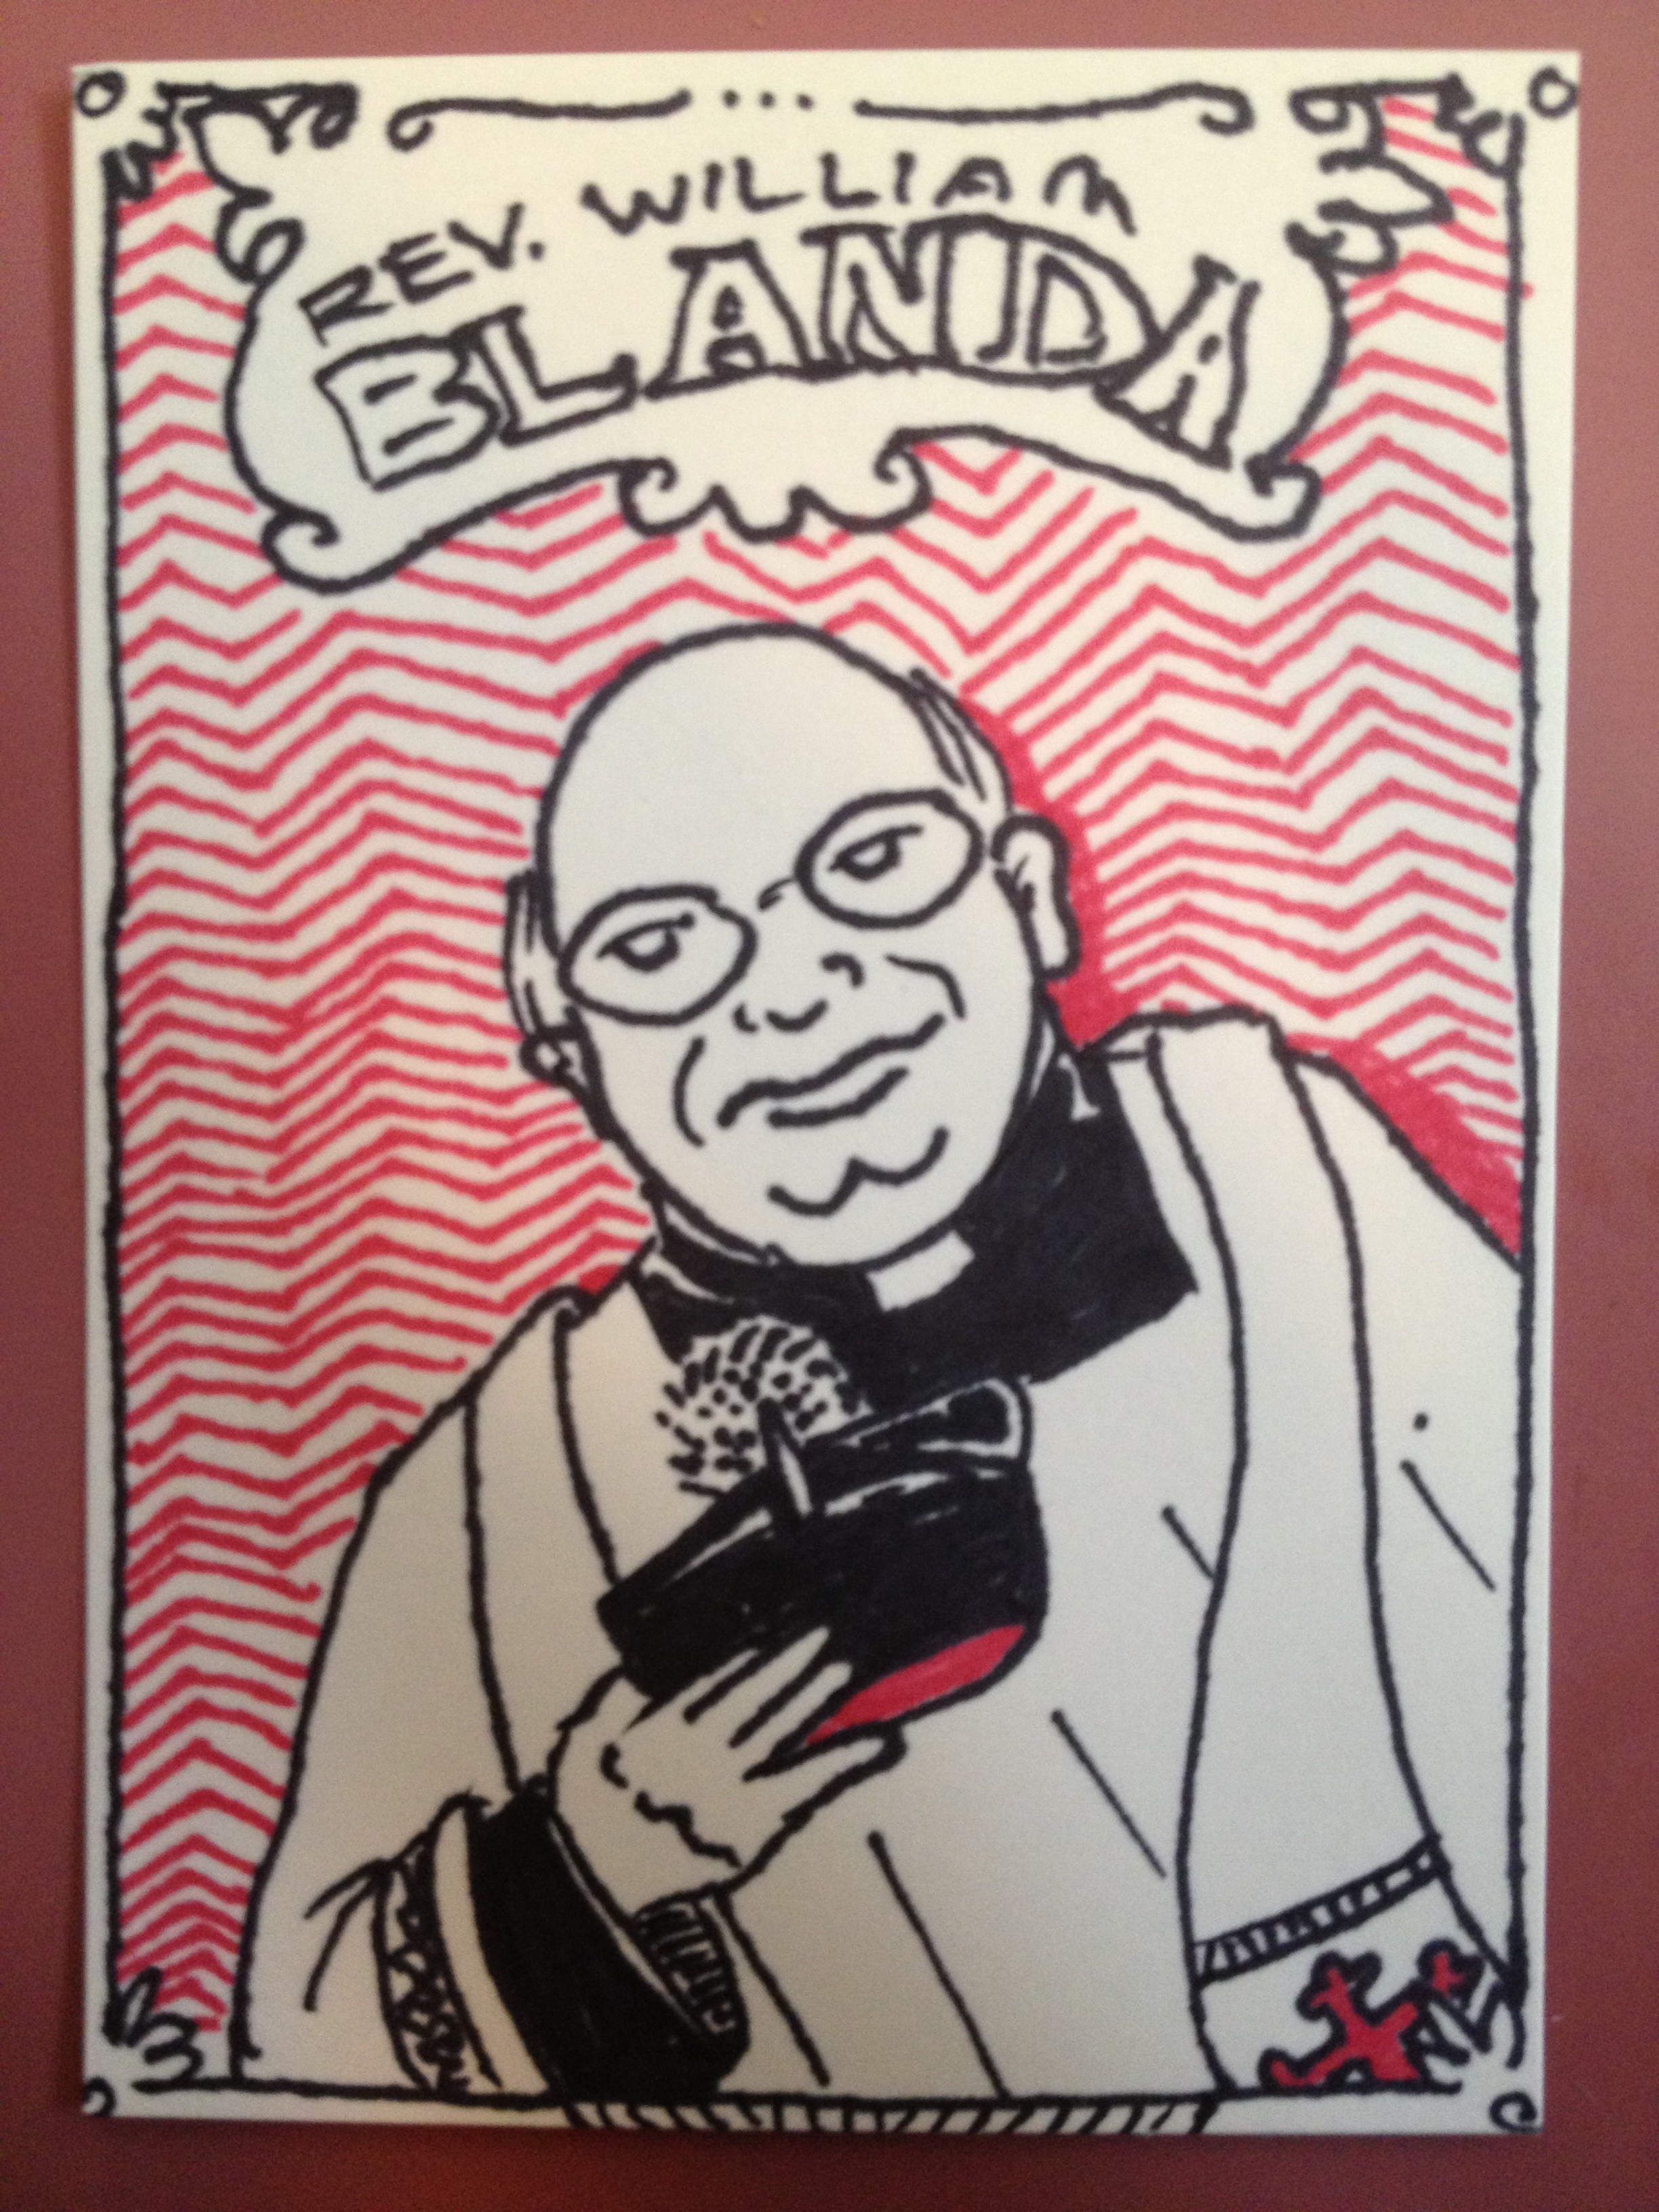 Fr. Bill Blanda Trading Card